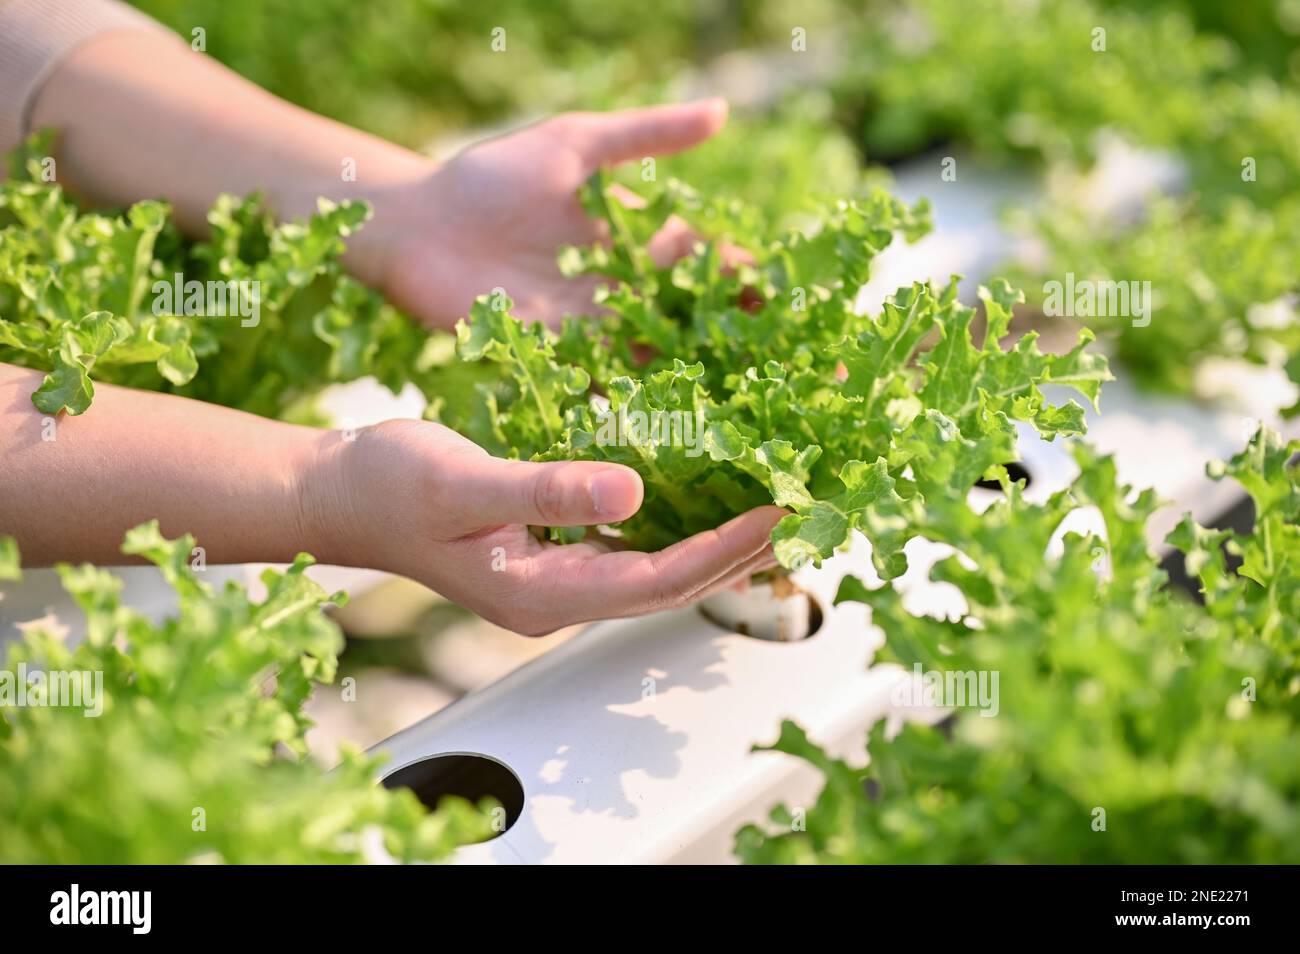 Imagen de primer plano de las manos de una framer femenina recogiendo o cosechando vegetales de ensalada hidropónica orgánica fresca en el invernadero. SME BUSINESS AGRÍCOLA Foto de stock